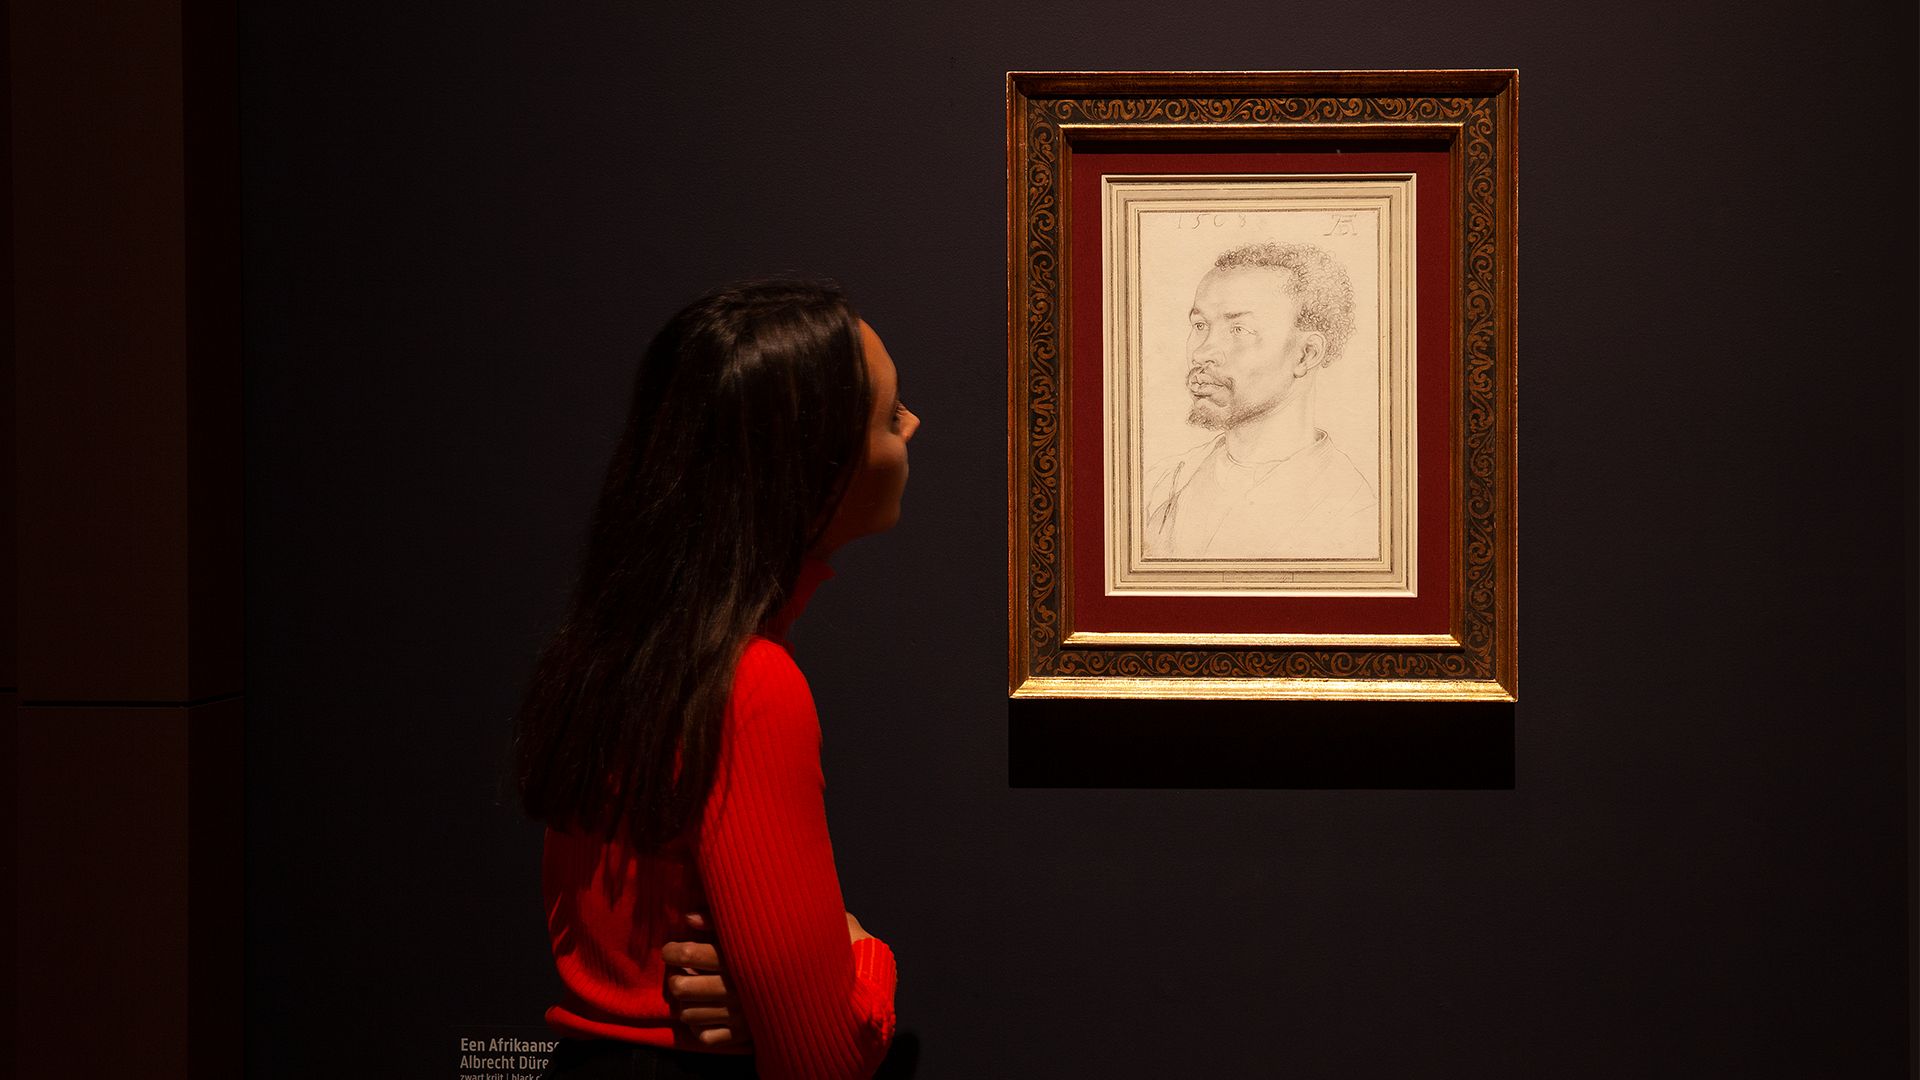 Visiteuse face au "Portrait of an African Man" d'Albrecht Dürer